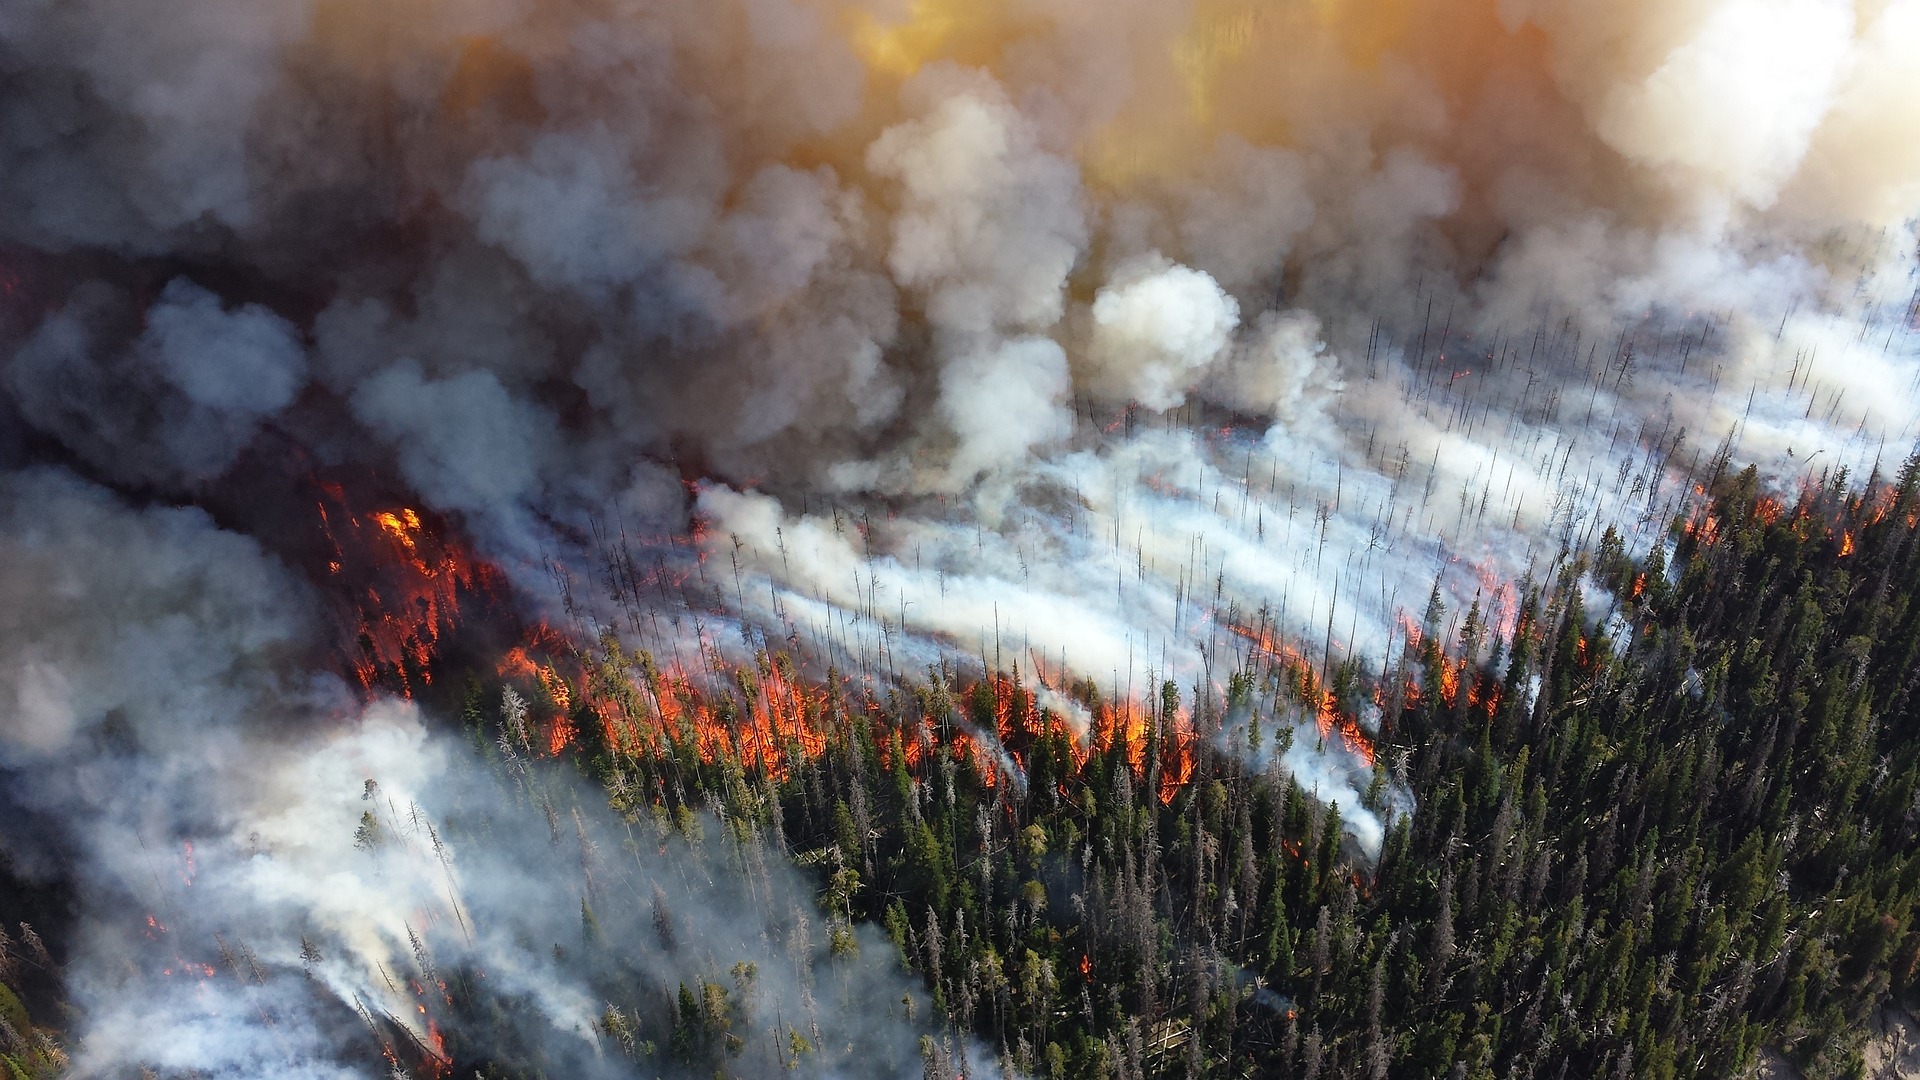 Le charbon de bois produit par les incendies de forêt pourrait retenir le carbone pendant des centaines d'années et contribuer à atténuer les changements climatiques. (Image: Skeeze / Pixabay)